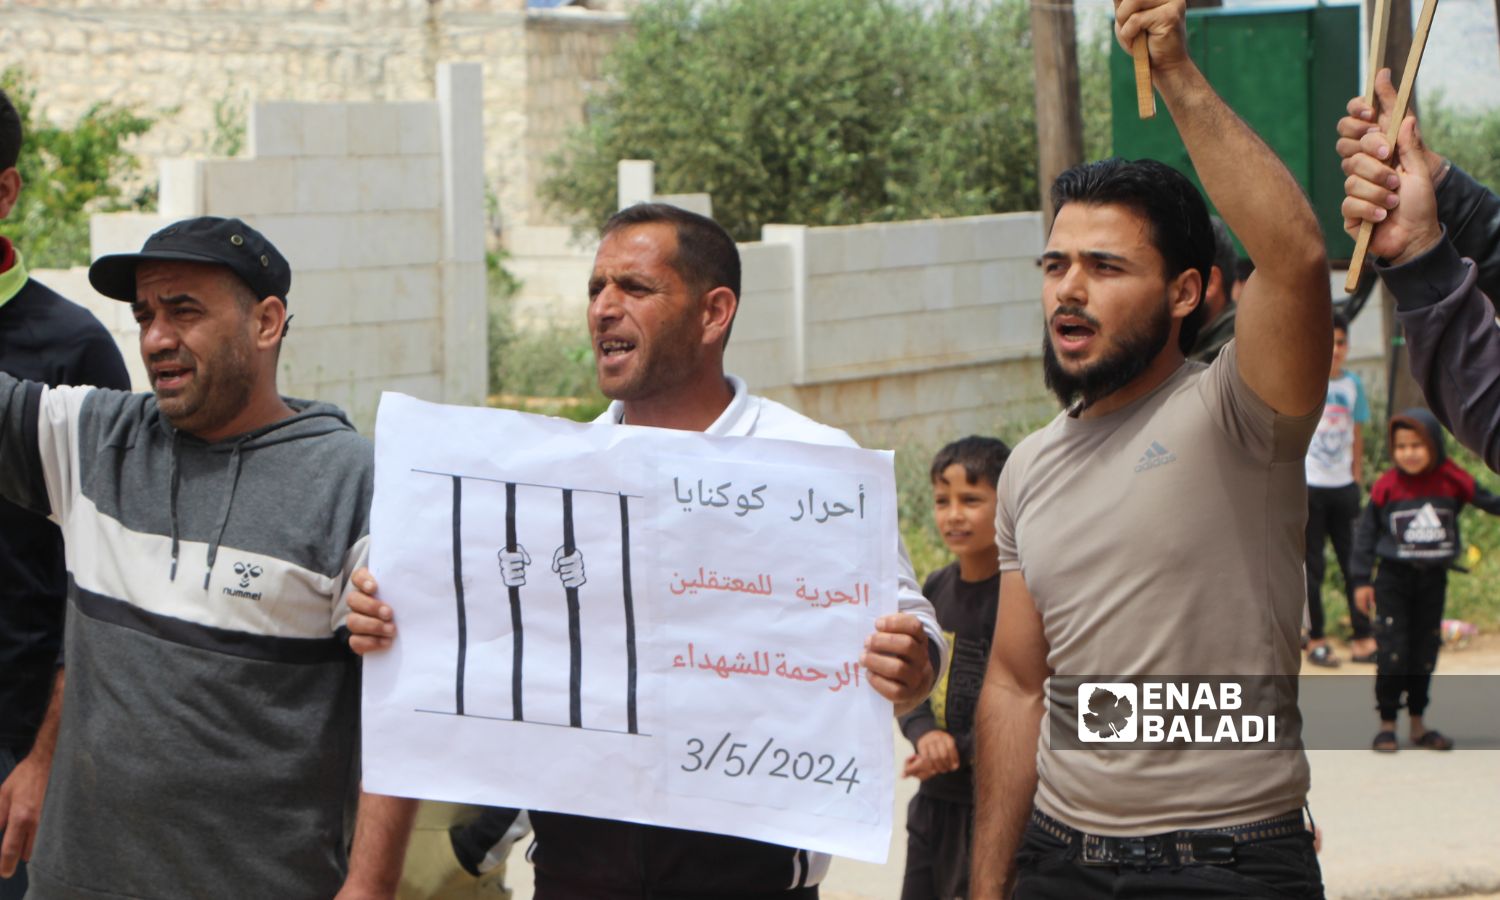 متظاهرون في قرية كوكنايا بريف إدلب الشمالي يطالبون بإسقاط قائد "هيئة تحرير الشام" "أبو محمد الجولاني" – 3 من أيار 2024 (/ إياد عبد الجواد)